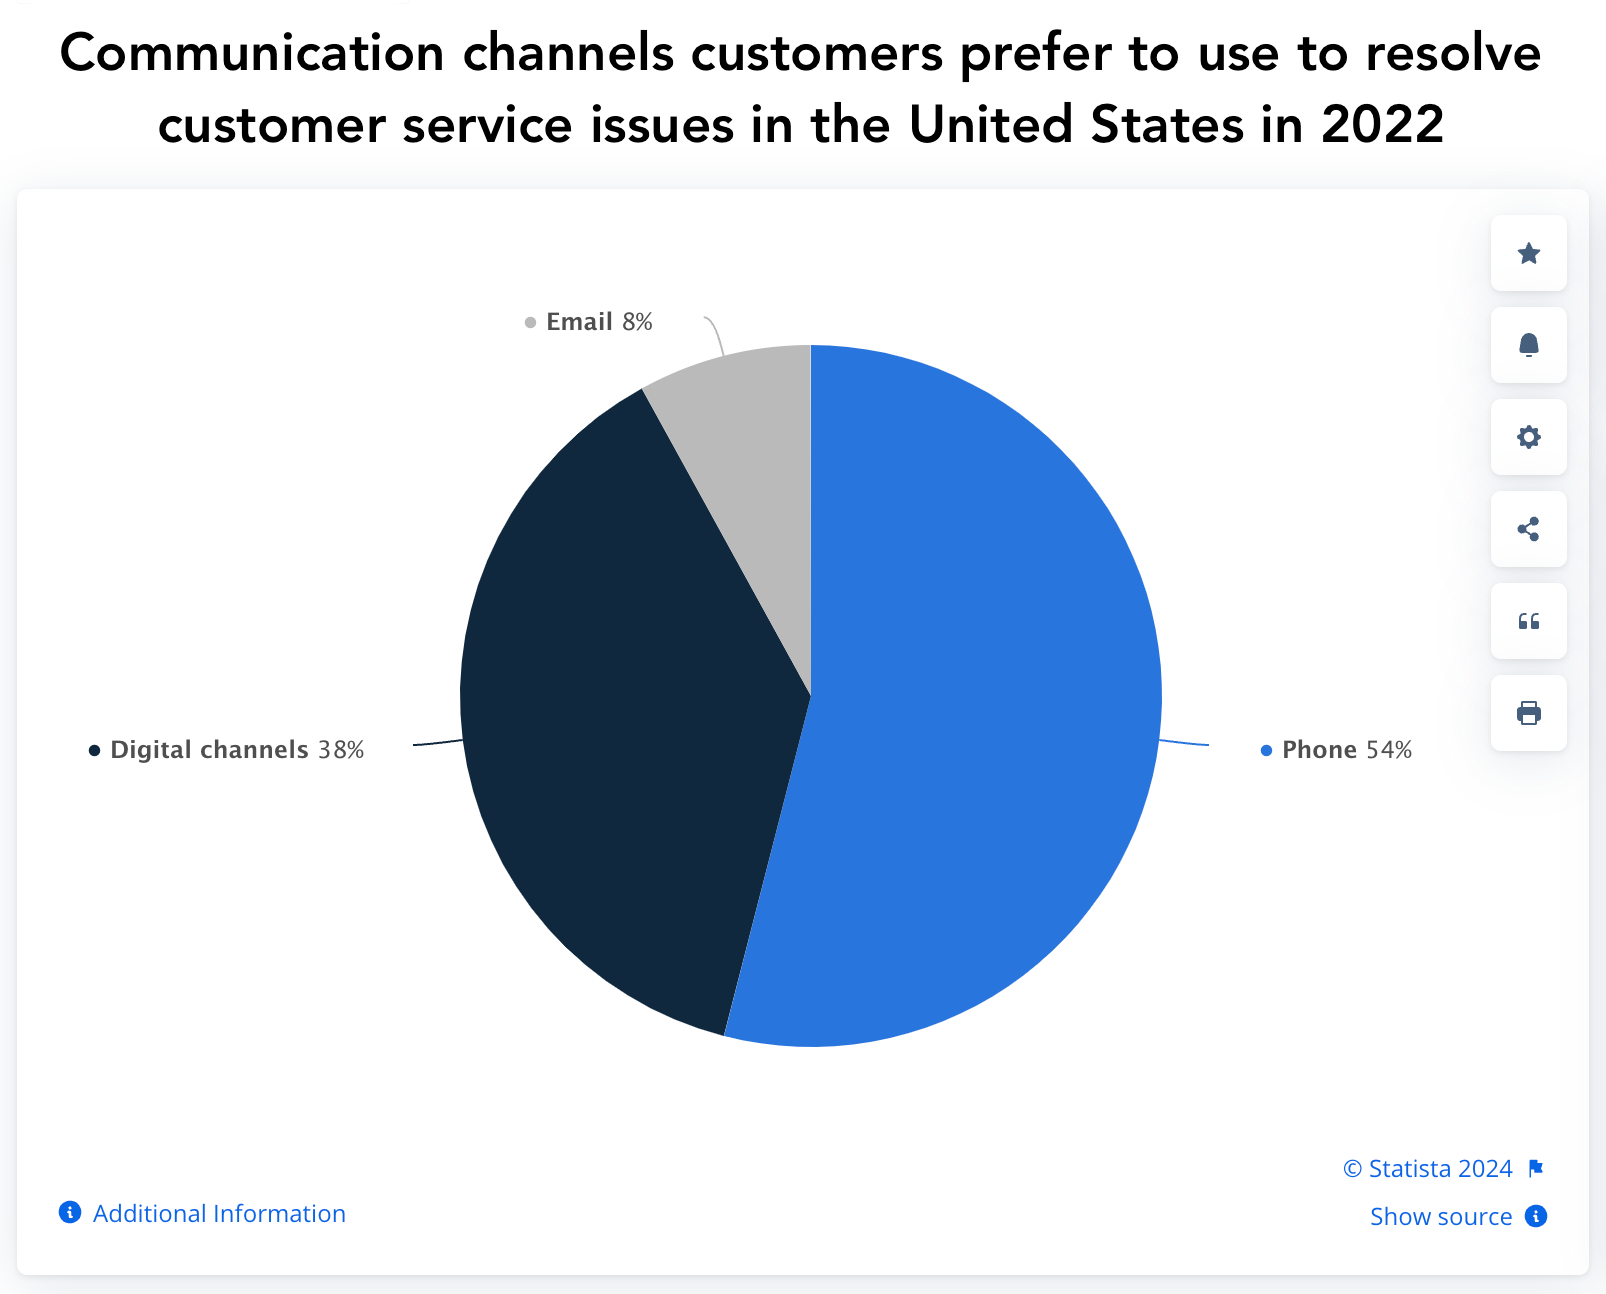 Круговая диаграмма Statista, показывающая каналы связи, которые клиенты предпочитают использовать для решения проблем в США в 2022 году: телефон, цифровые каналы, электронная почта